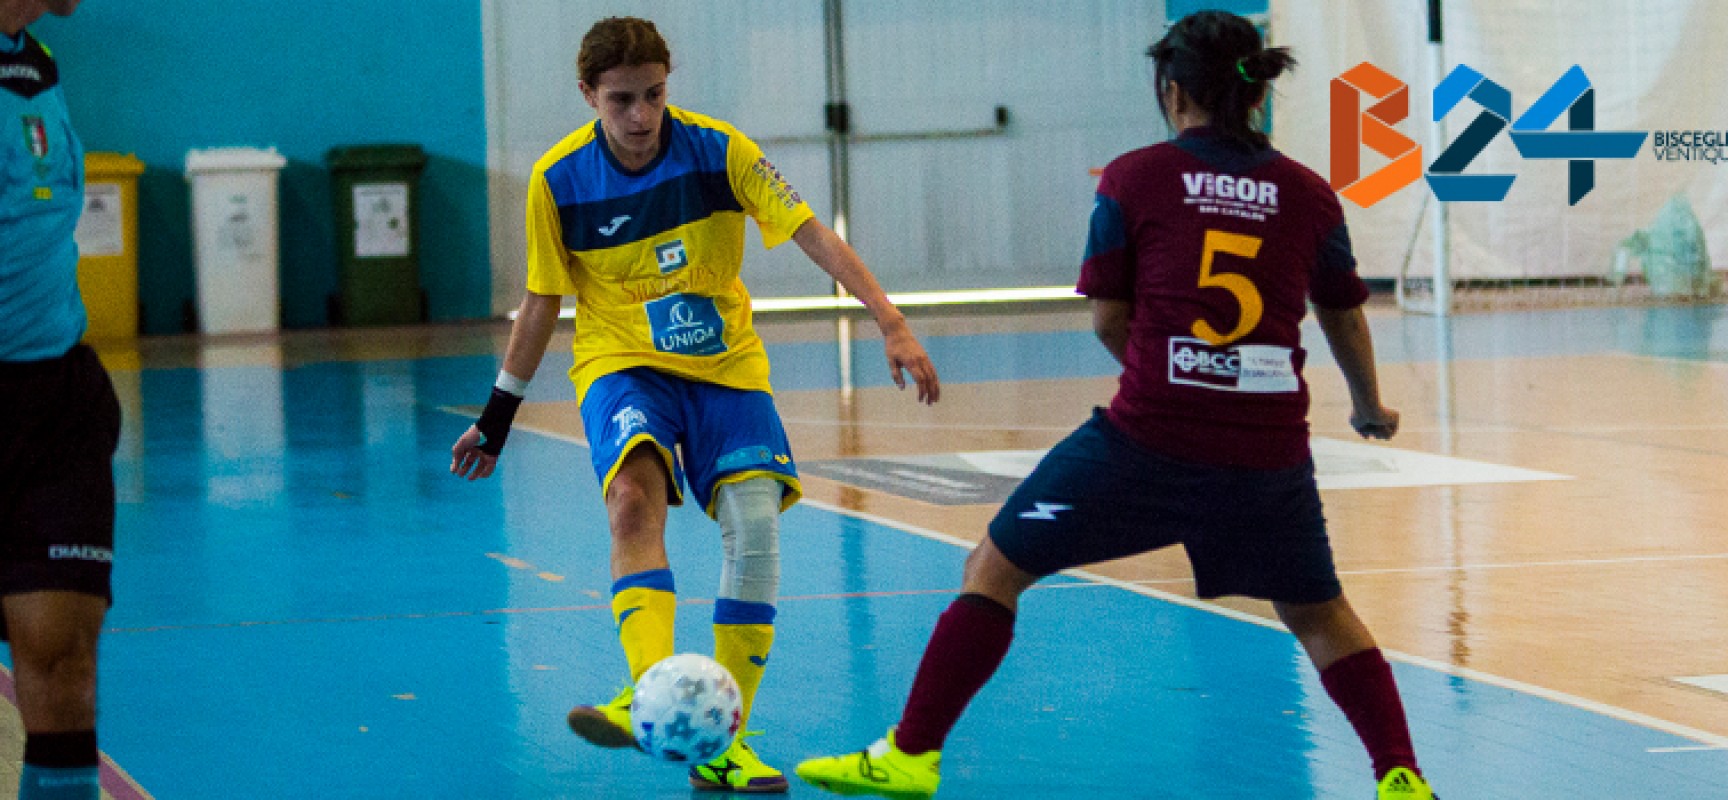 Arcadia e Futsal Bisceglie femminile oggi in cerca di riscatto dopo le sconfitte dell’ultimo turno